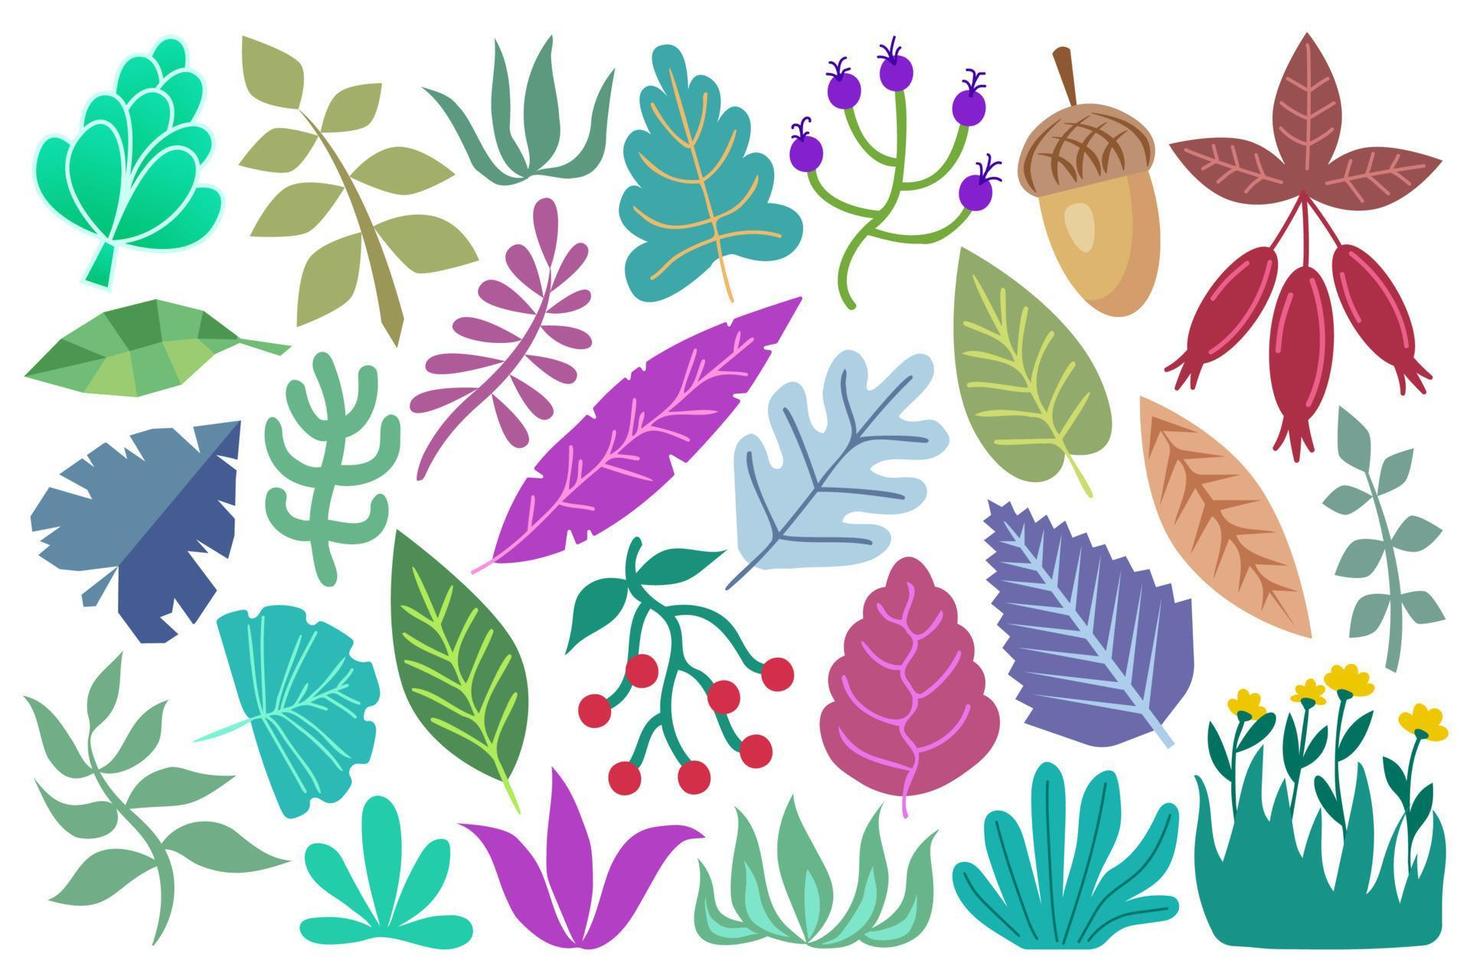 bladeren en planten collectie. botanische set met plant ontwerpelementen geïsoleerd op een witte achtergrond. kleurrijke gestileerde bladeren, takken, planten, decoratieve abstracte ontwerpelementen, vector